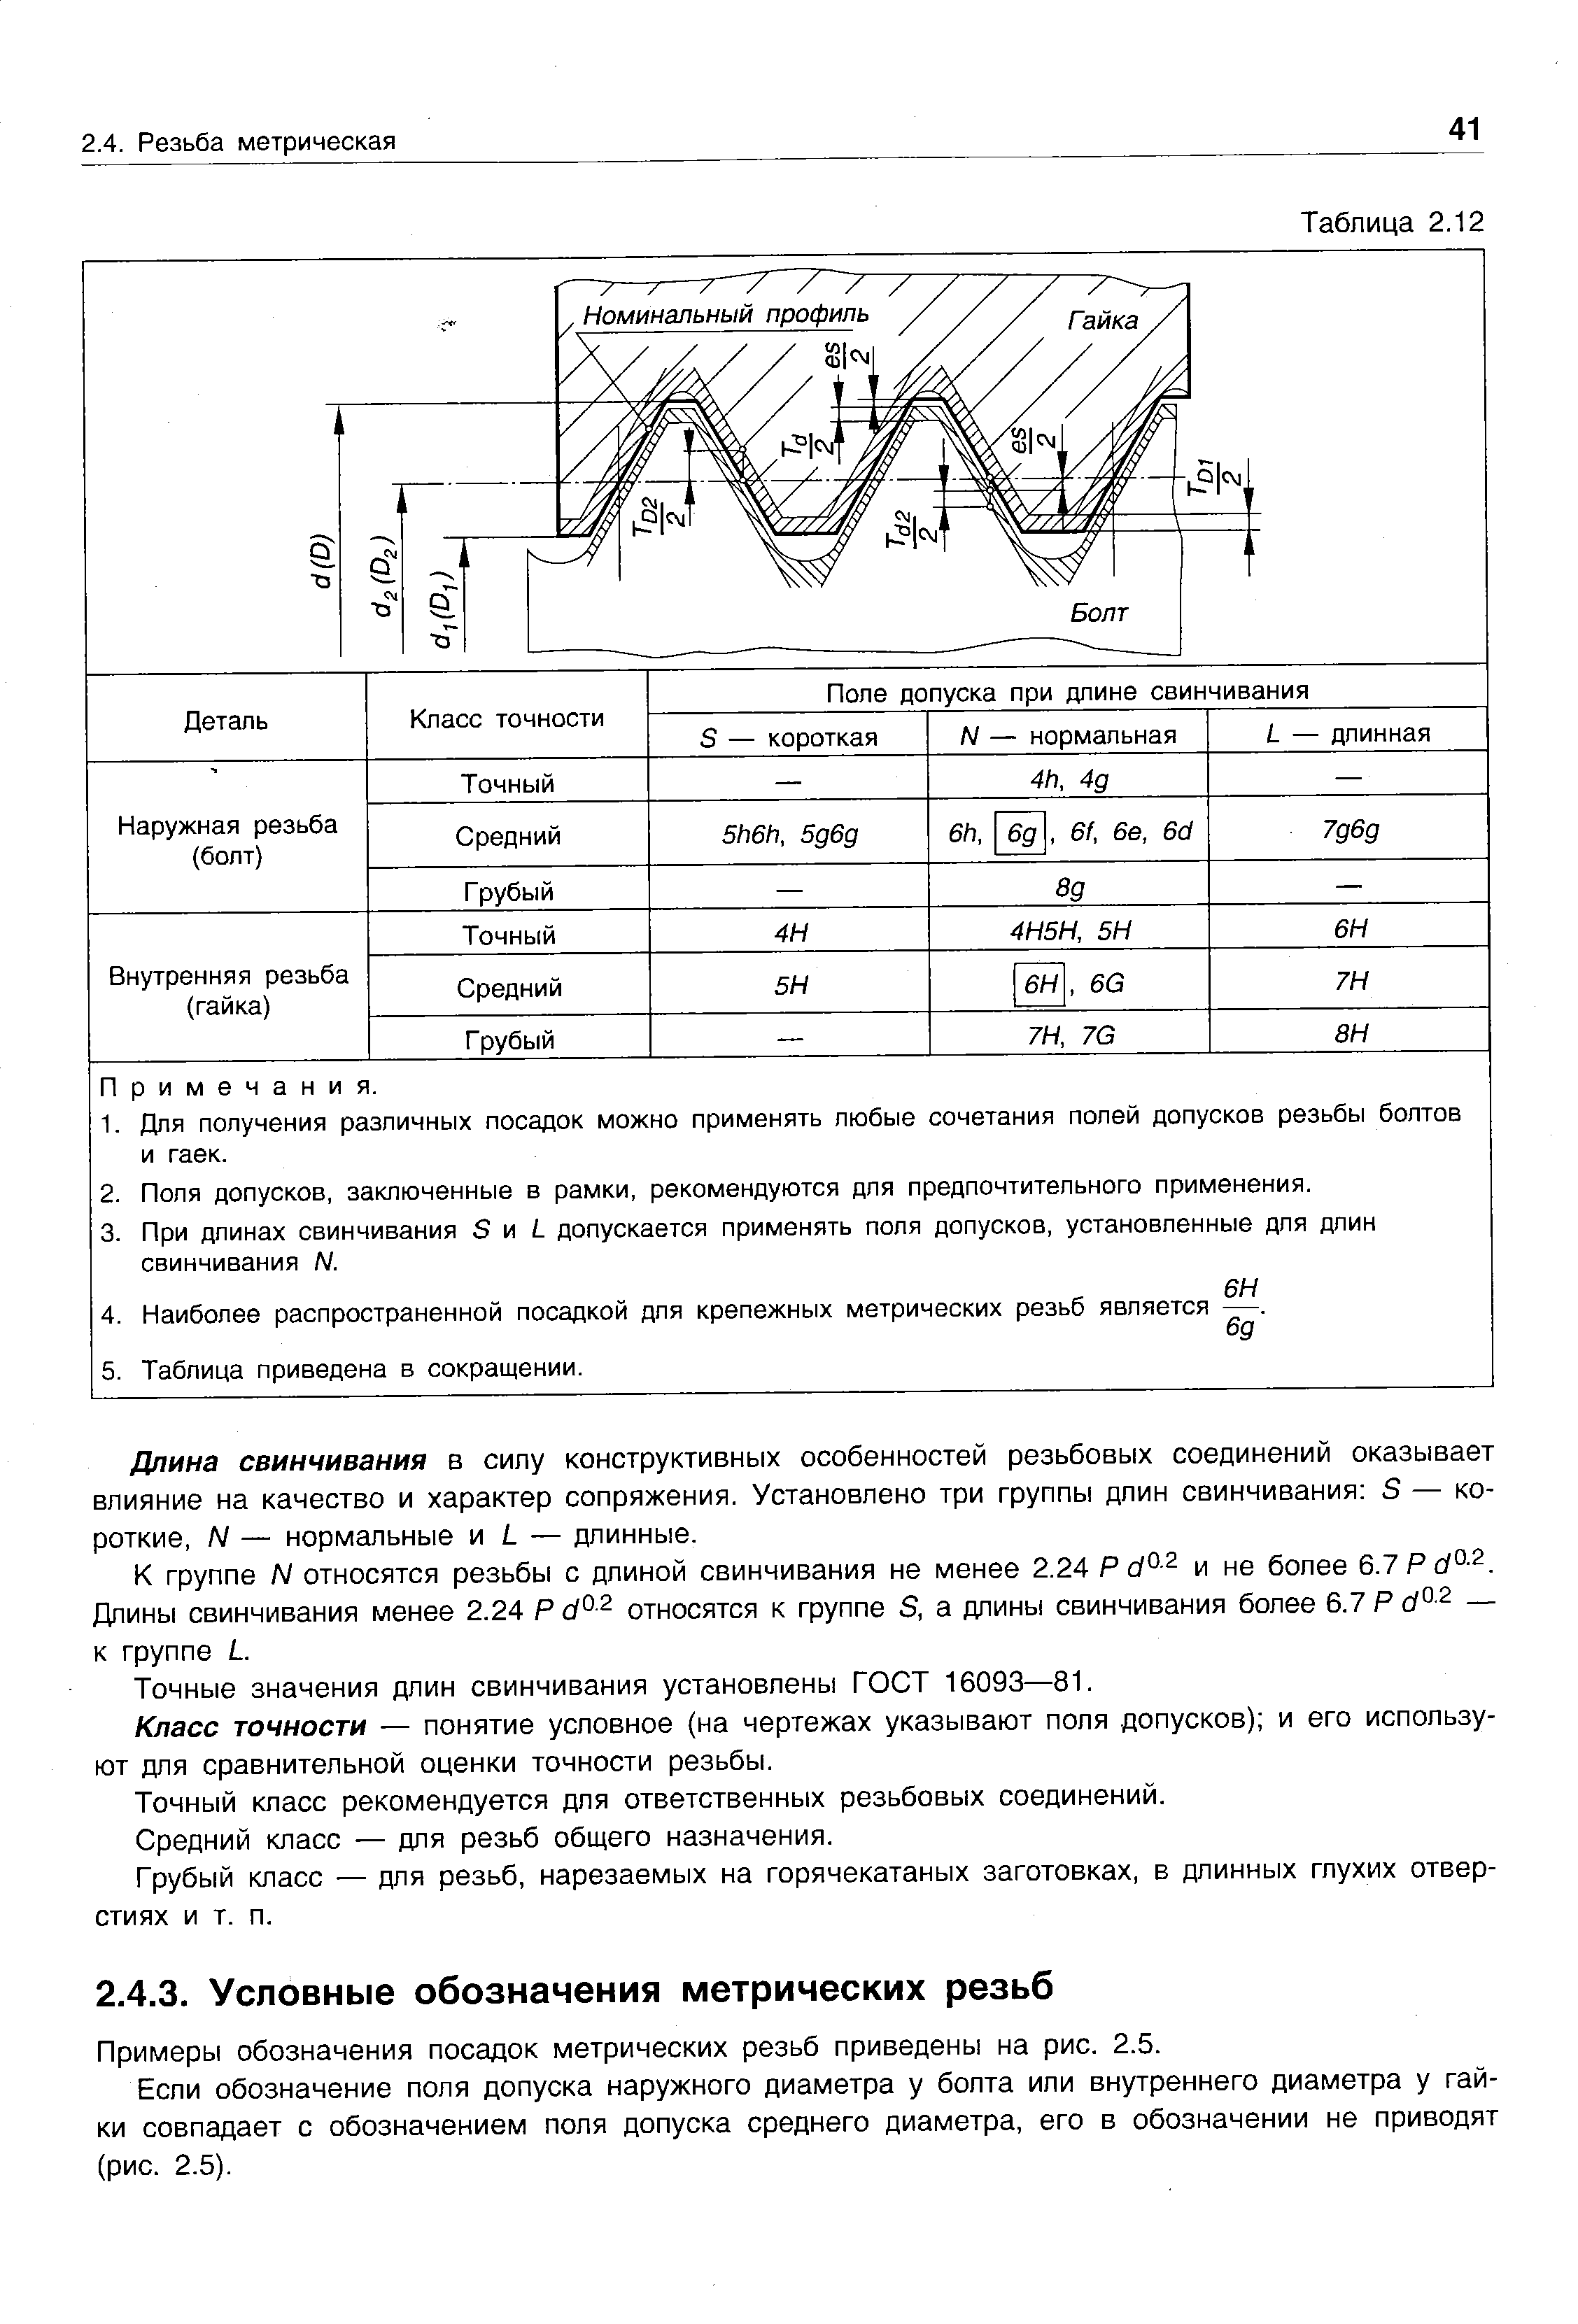 Примеры обозначения посадок метрических резьб приведены на рис. 2.5.
